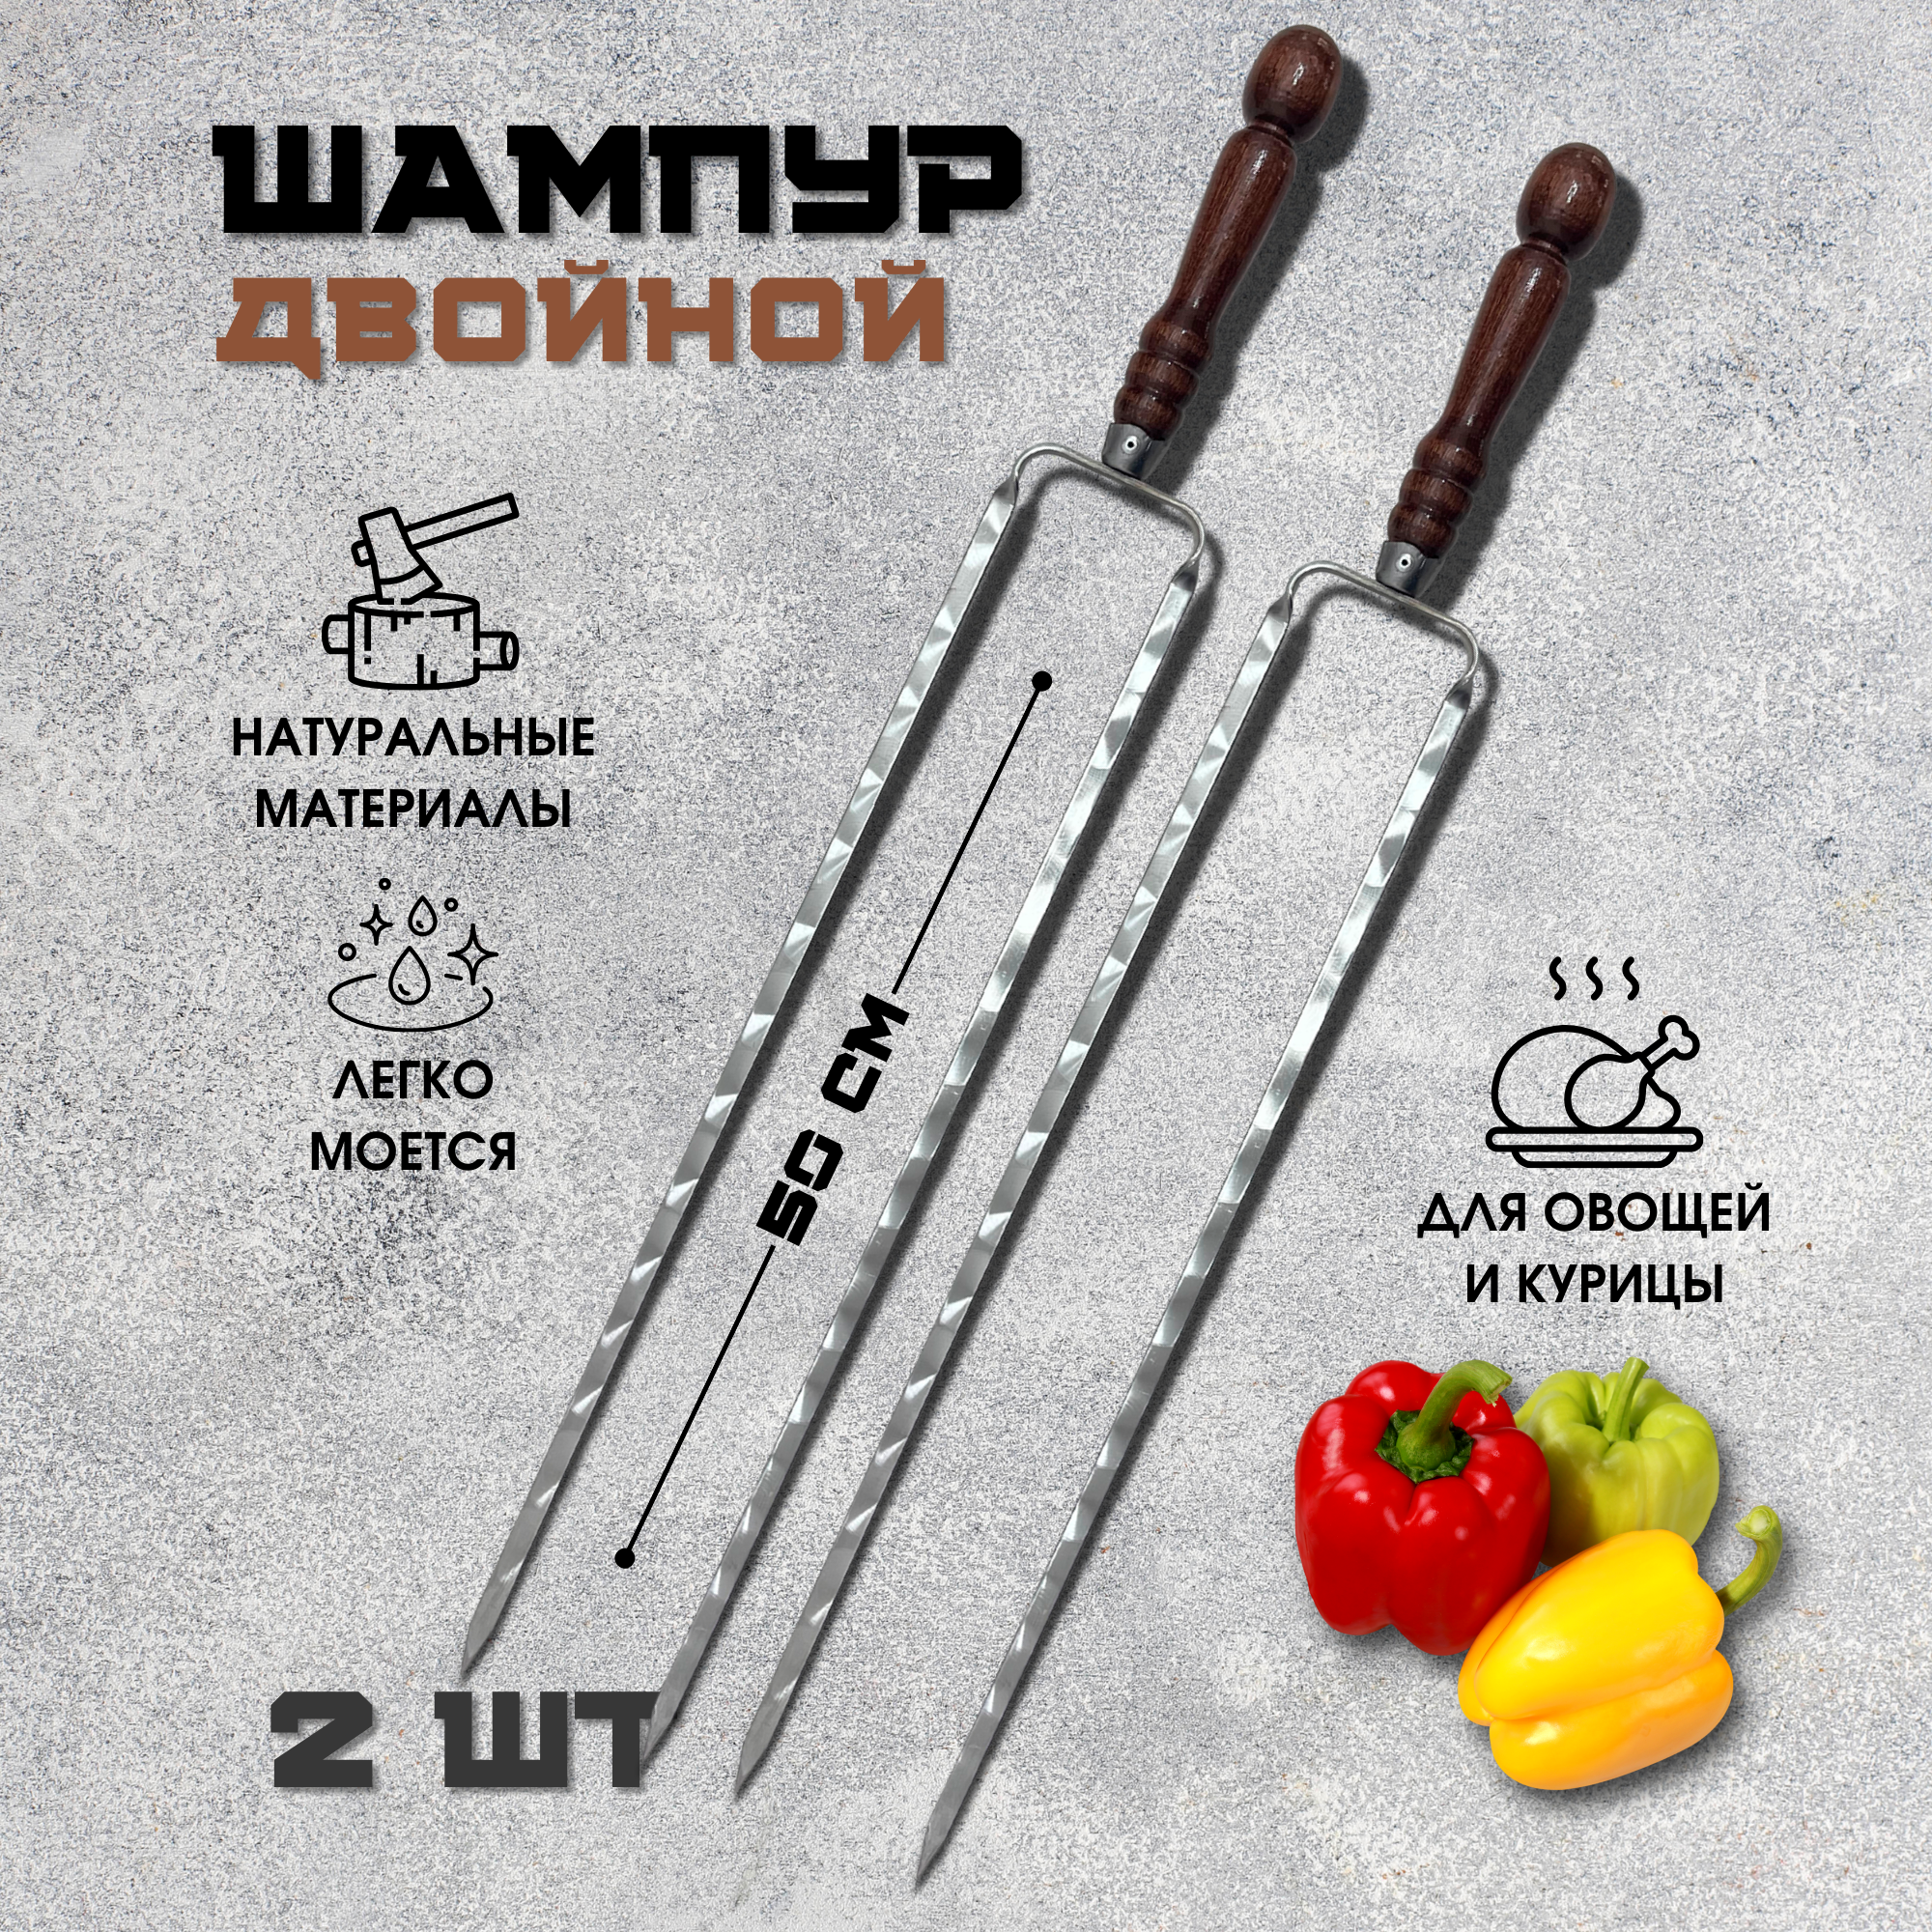 Шампура набор Пикник Кавказ РЗ50 для шашлыка с деревянной ручкой